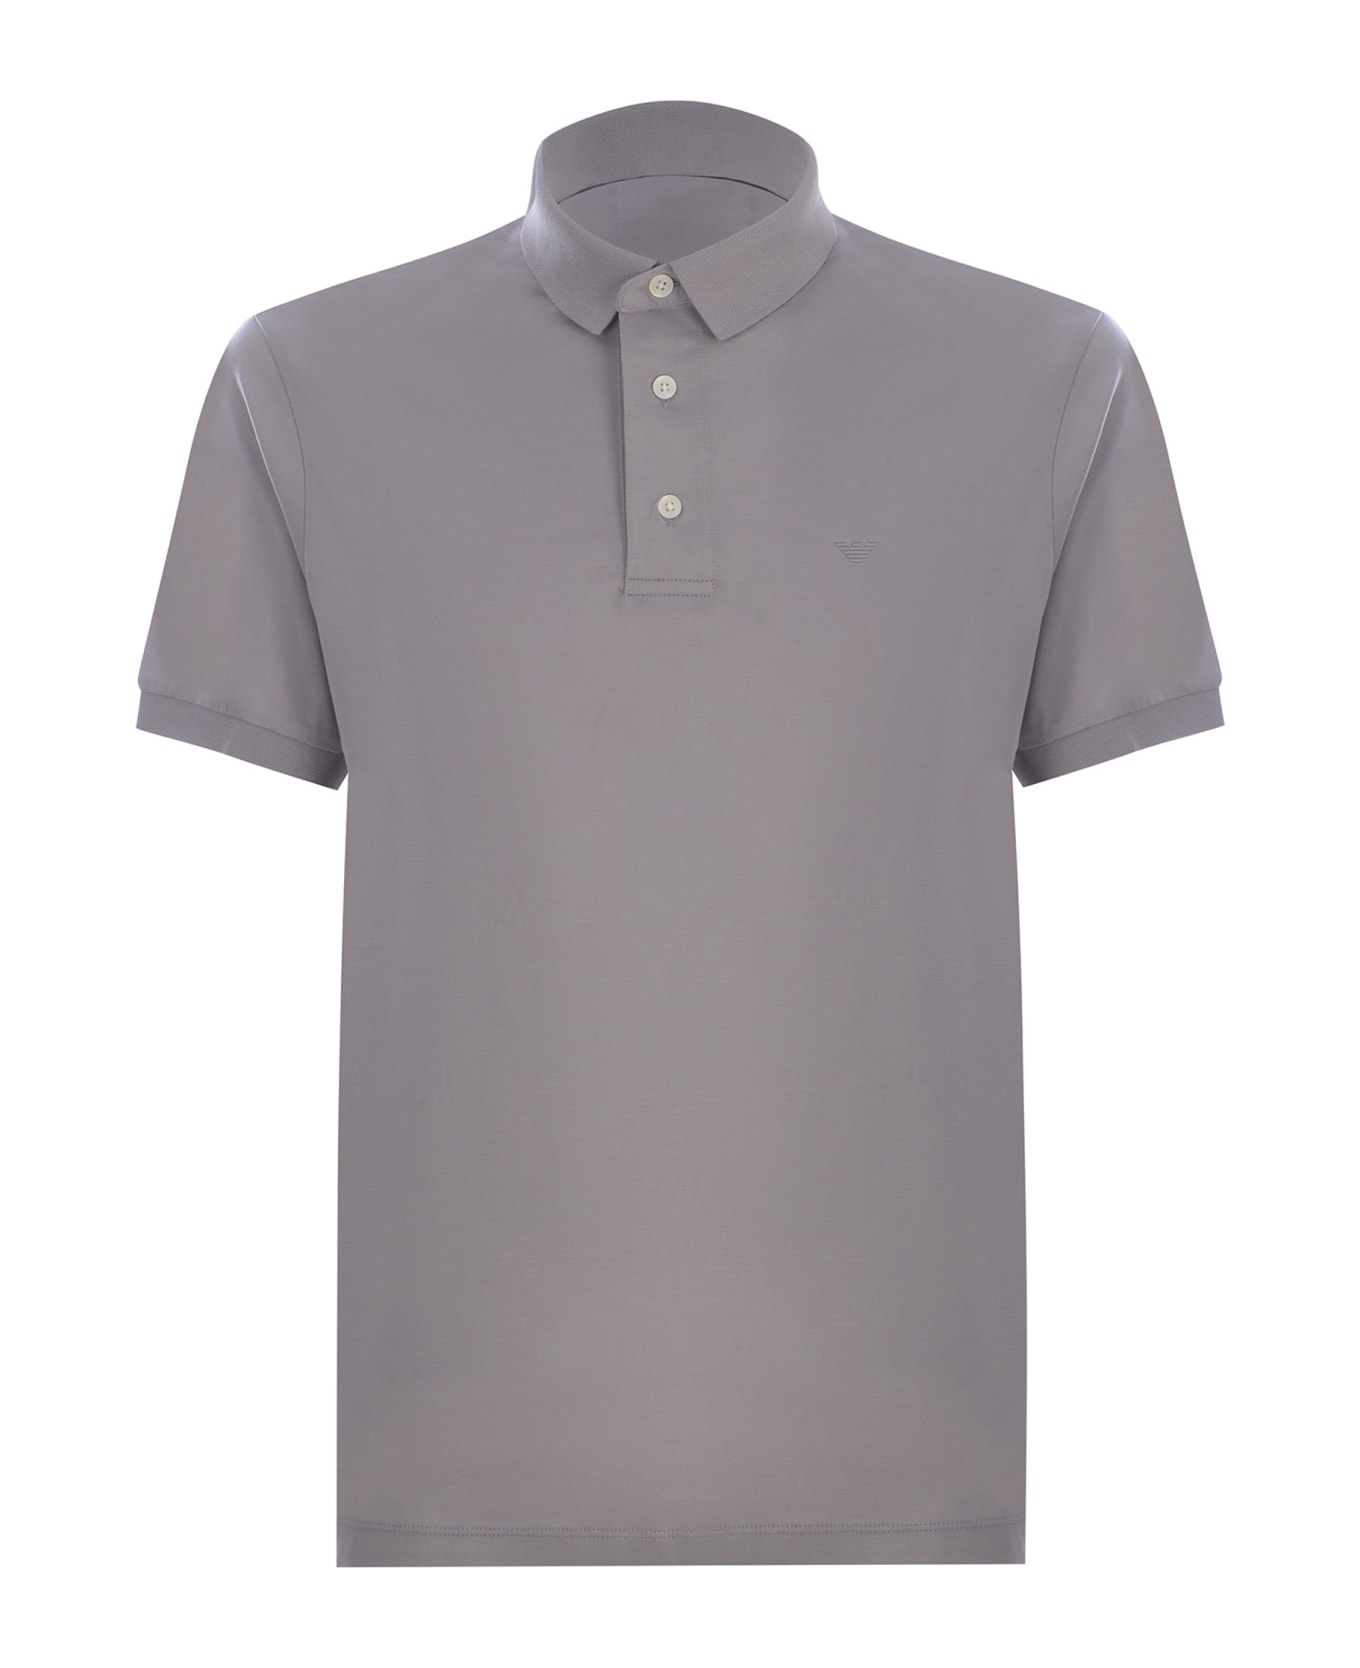 Emporio Armani Polo Shirt Emporio Armani Made Of Jersey - Grigio ポロシャツ